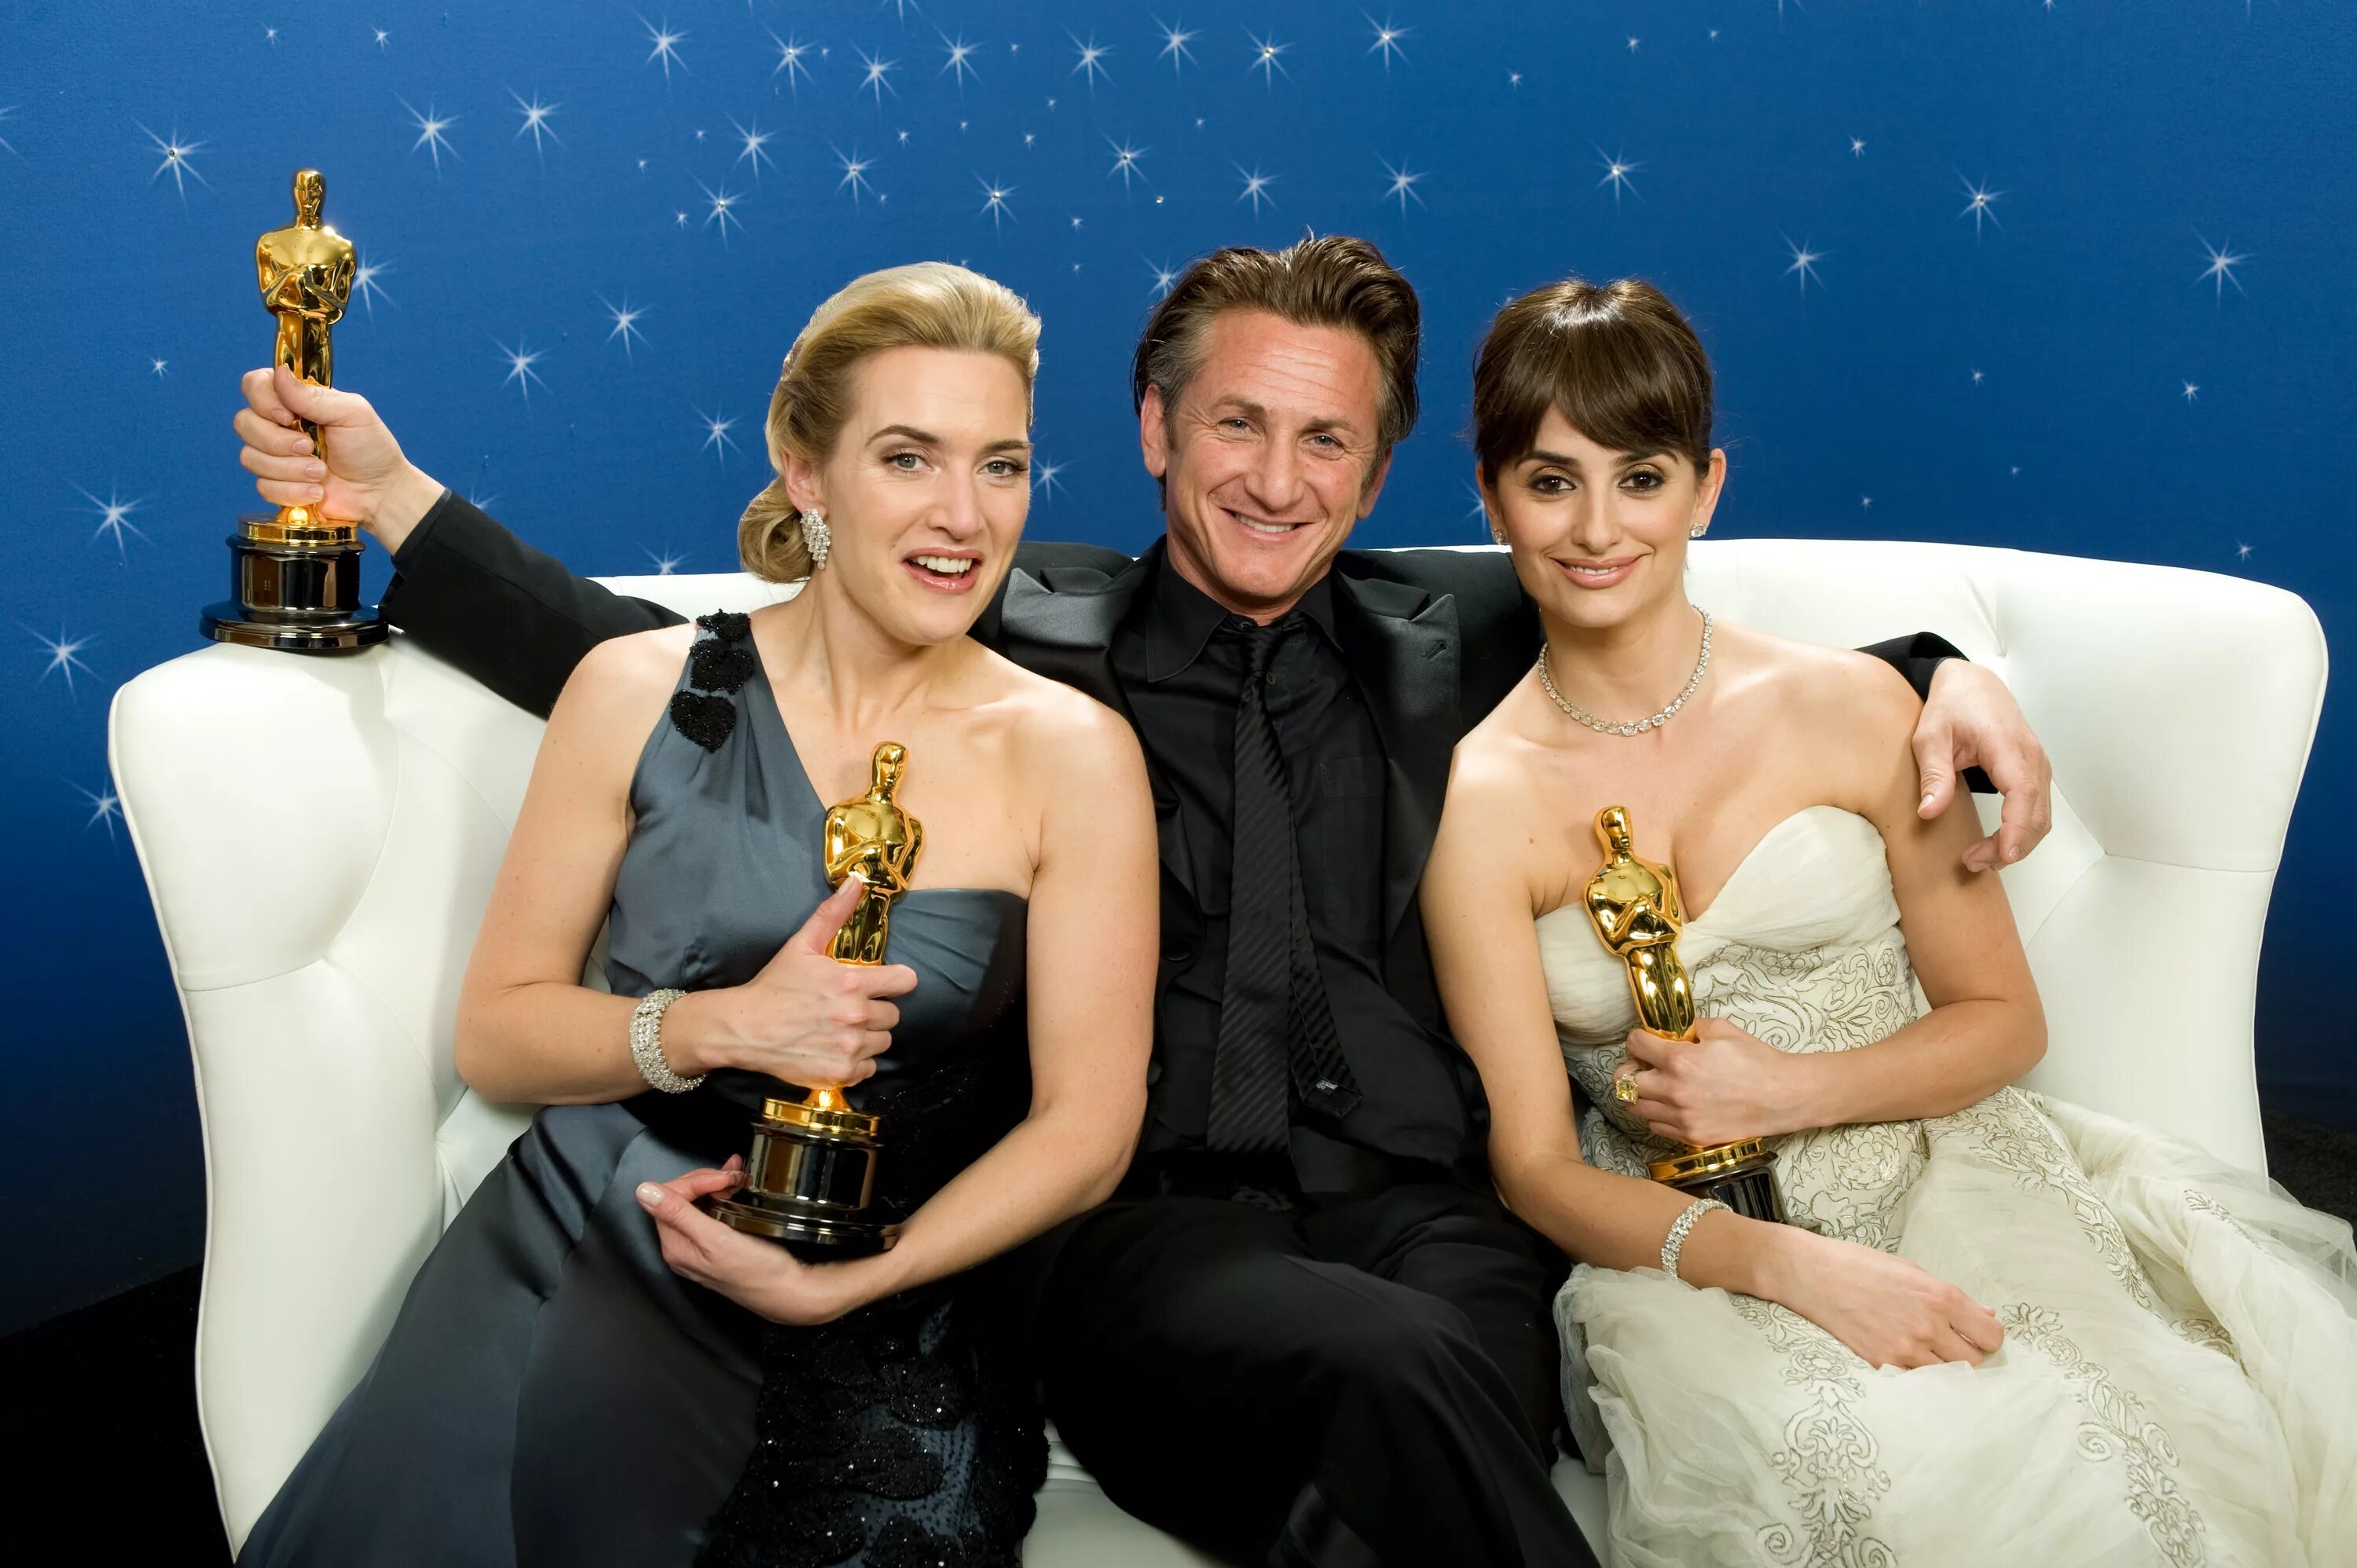 Movie star likes. Кейт Уинслет 2009 год Оскар. Шон Пенн вручил Оскар Зеленскому.